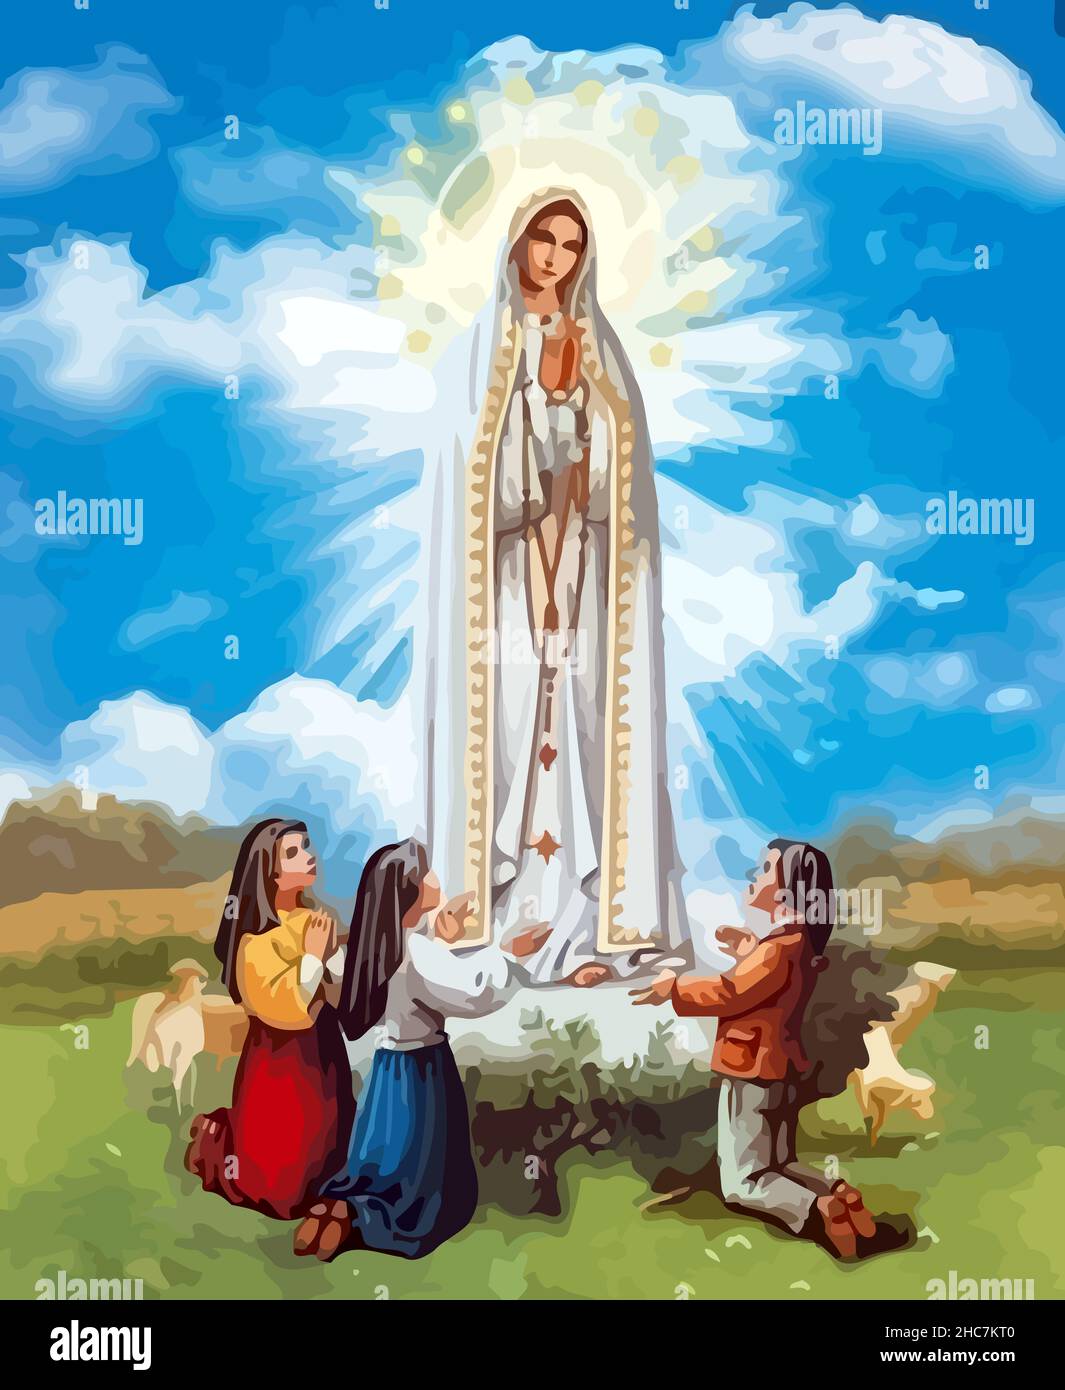 lady holy fatima miracle illustration Stock Photo